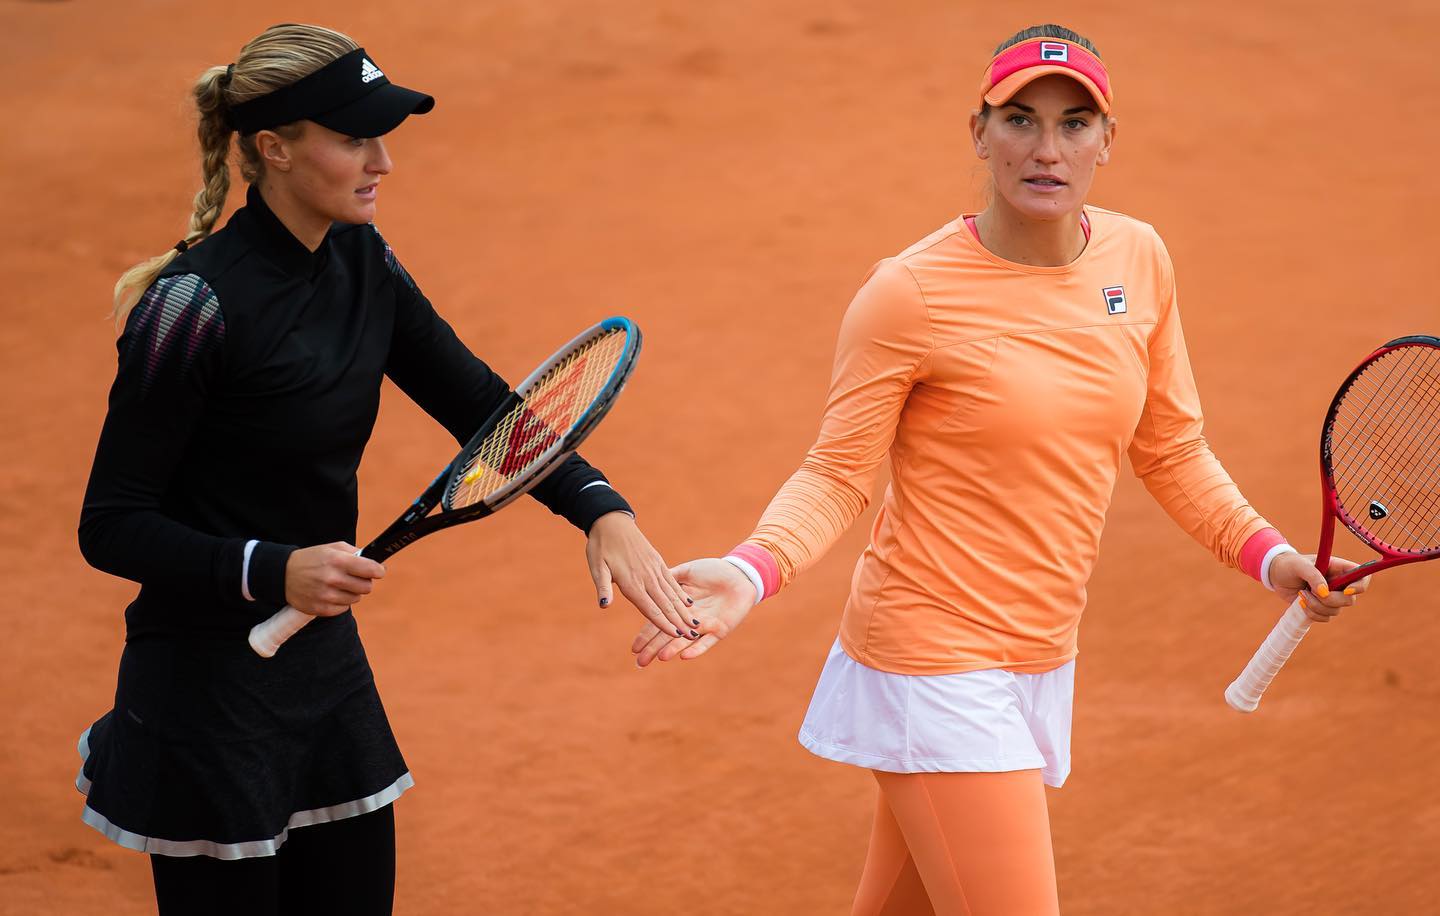 Damentennis: Tímea Babos und Kristina Mladenovic sind wieder Doppel-Team des Jahres!